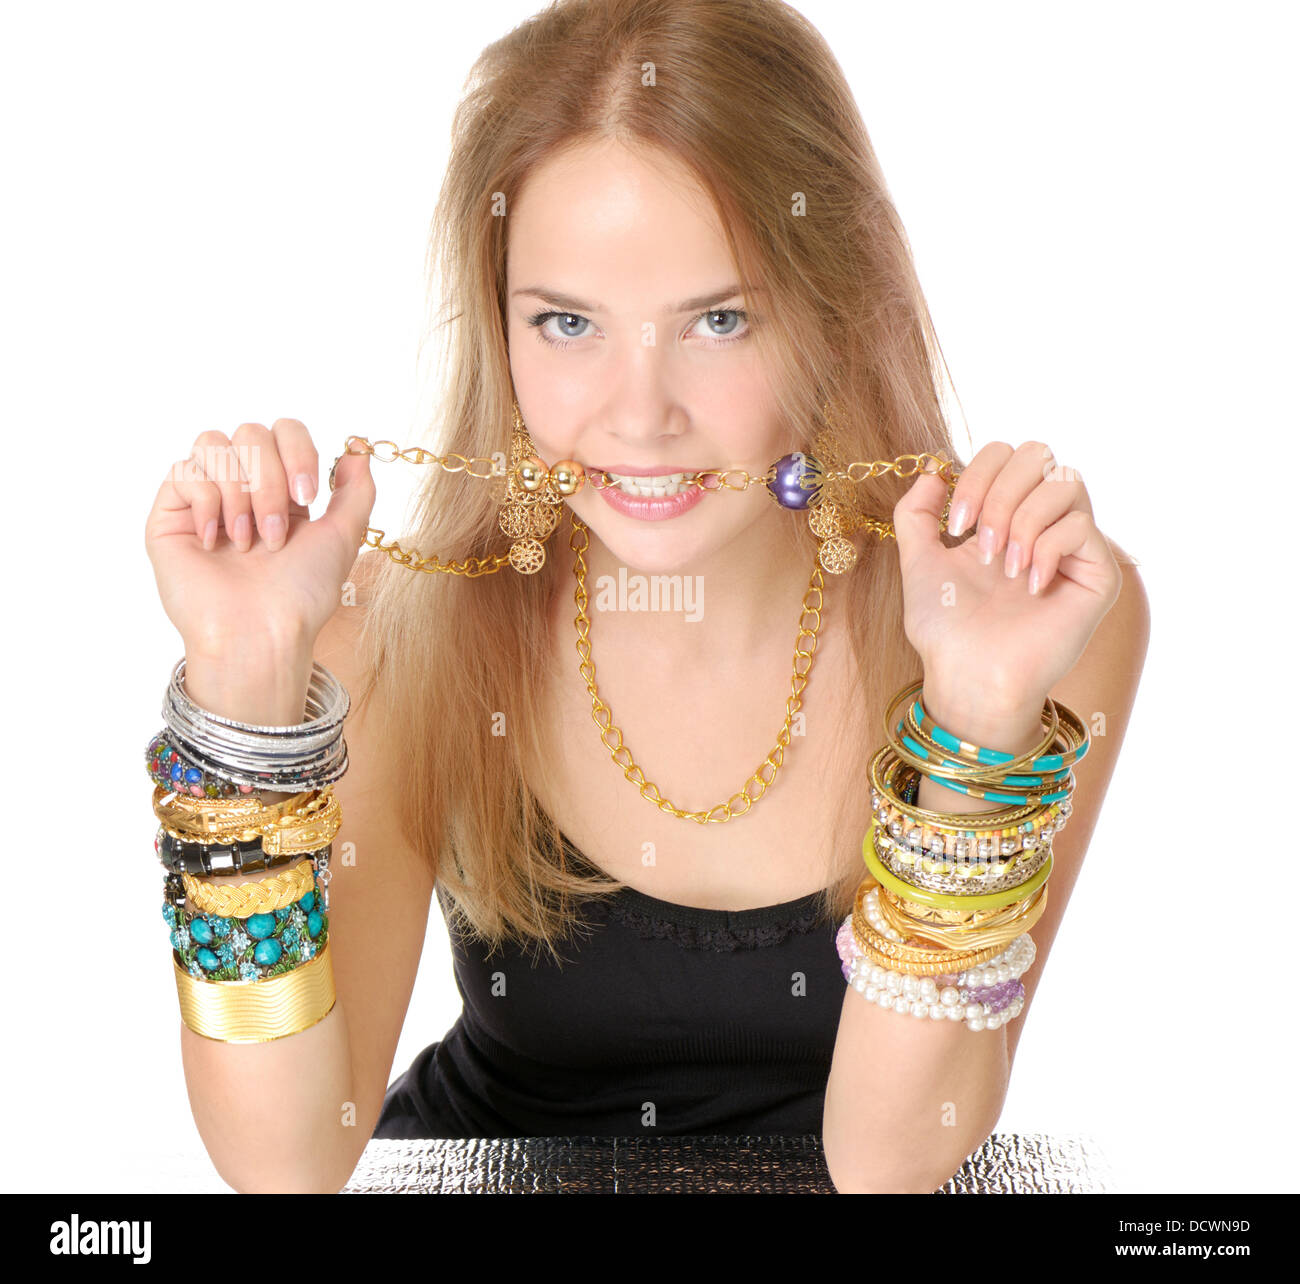 Fille de l'adolescence avec beaucoup de bracelets et collier dans sa bouche Banque D'Images